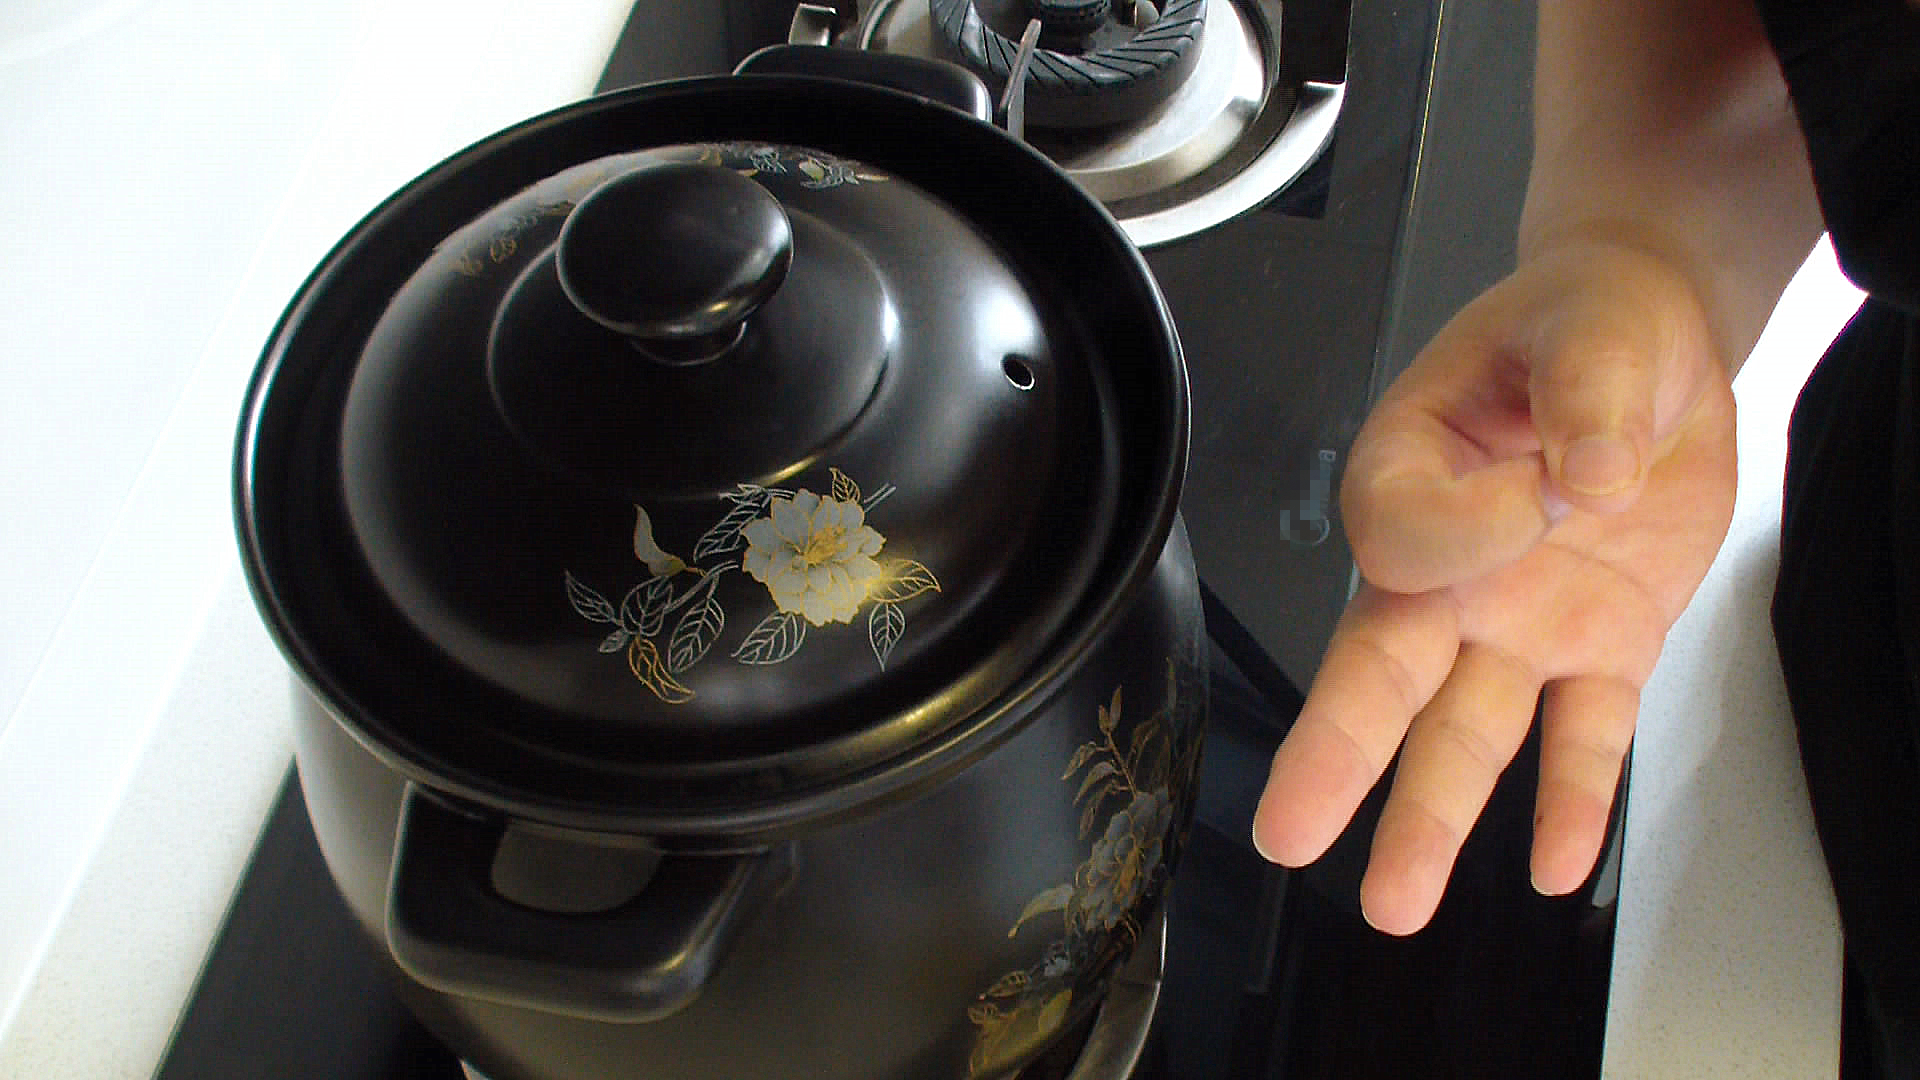 砂锅粥的做法,砂锅粥的做法及配方